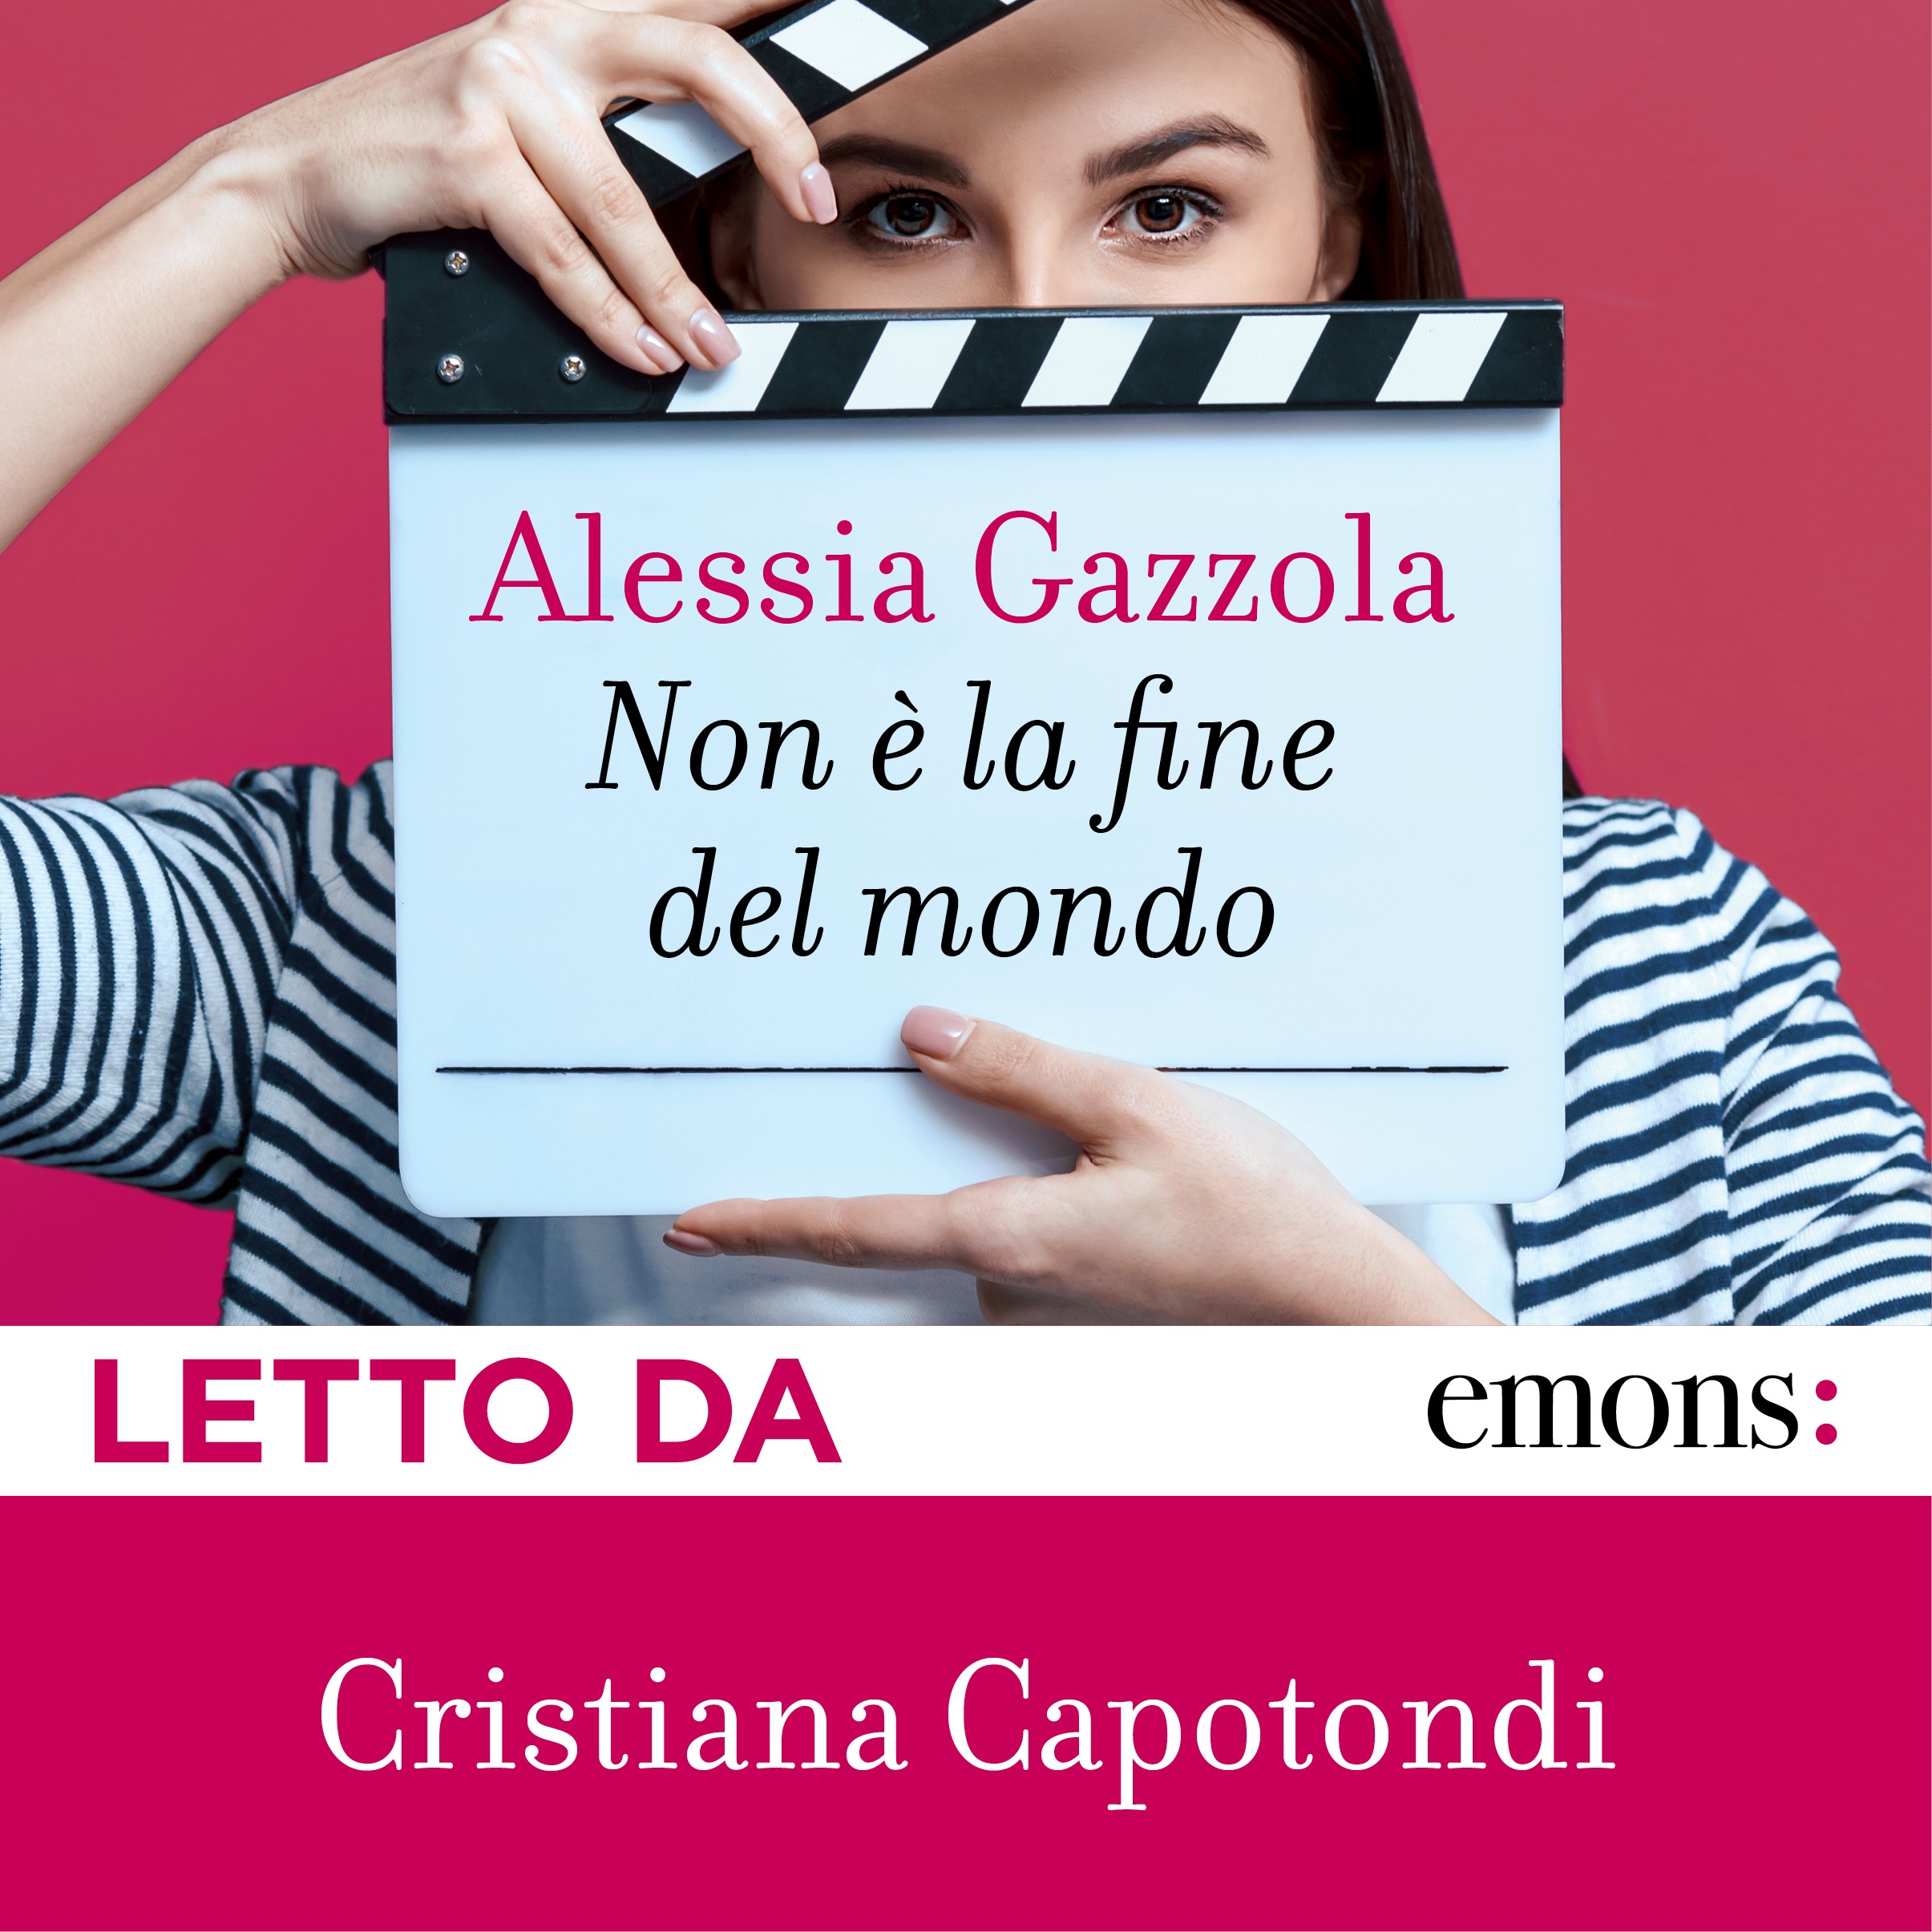 Gli ebook di Alessia Gazzola - Bookrepublic